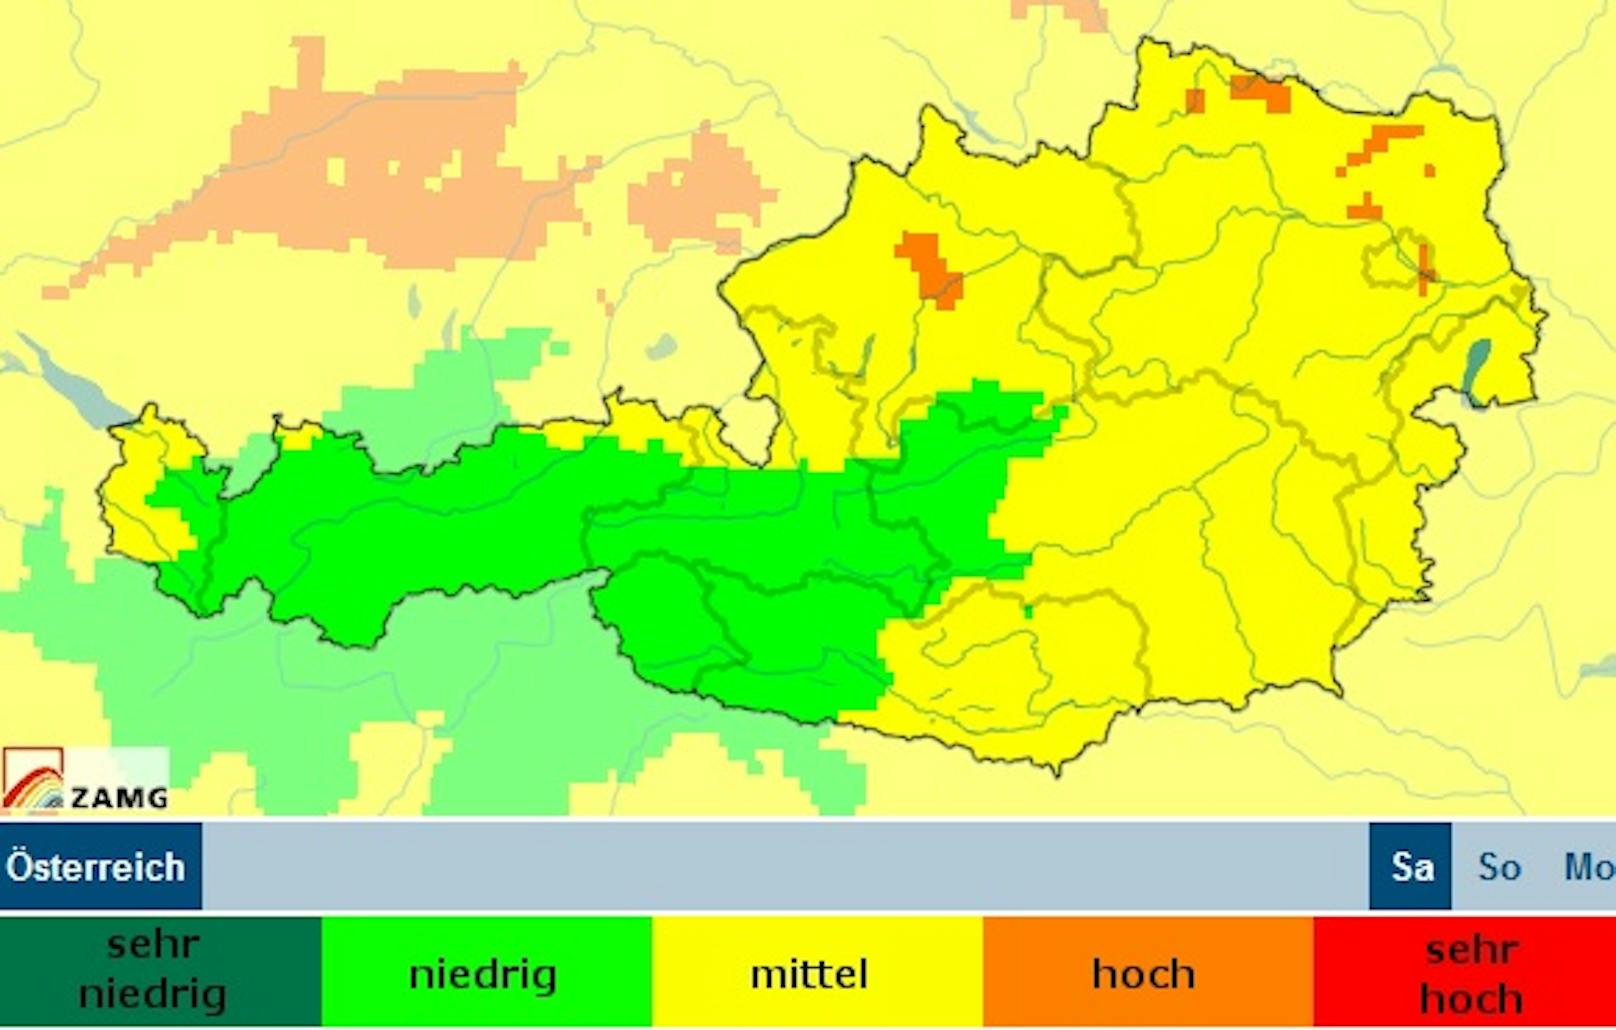 Der Schadstoffgehalt ist in einigen Teilen Österreichs bereits "hoch".